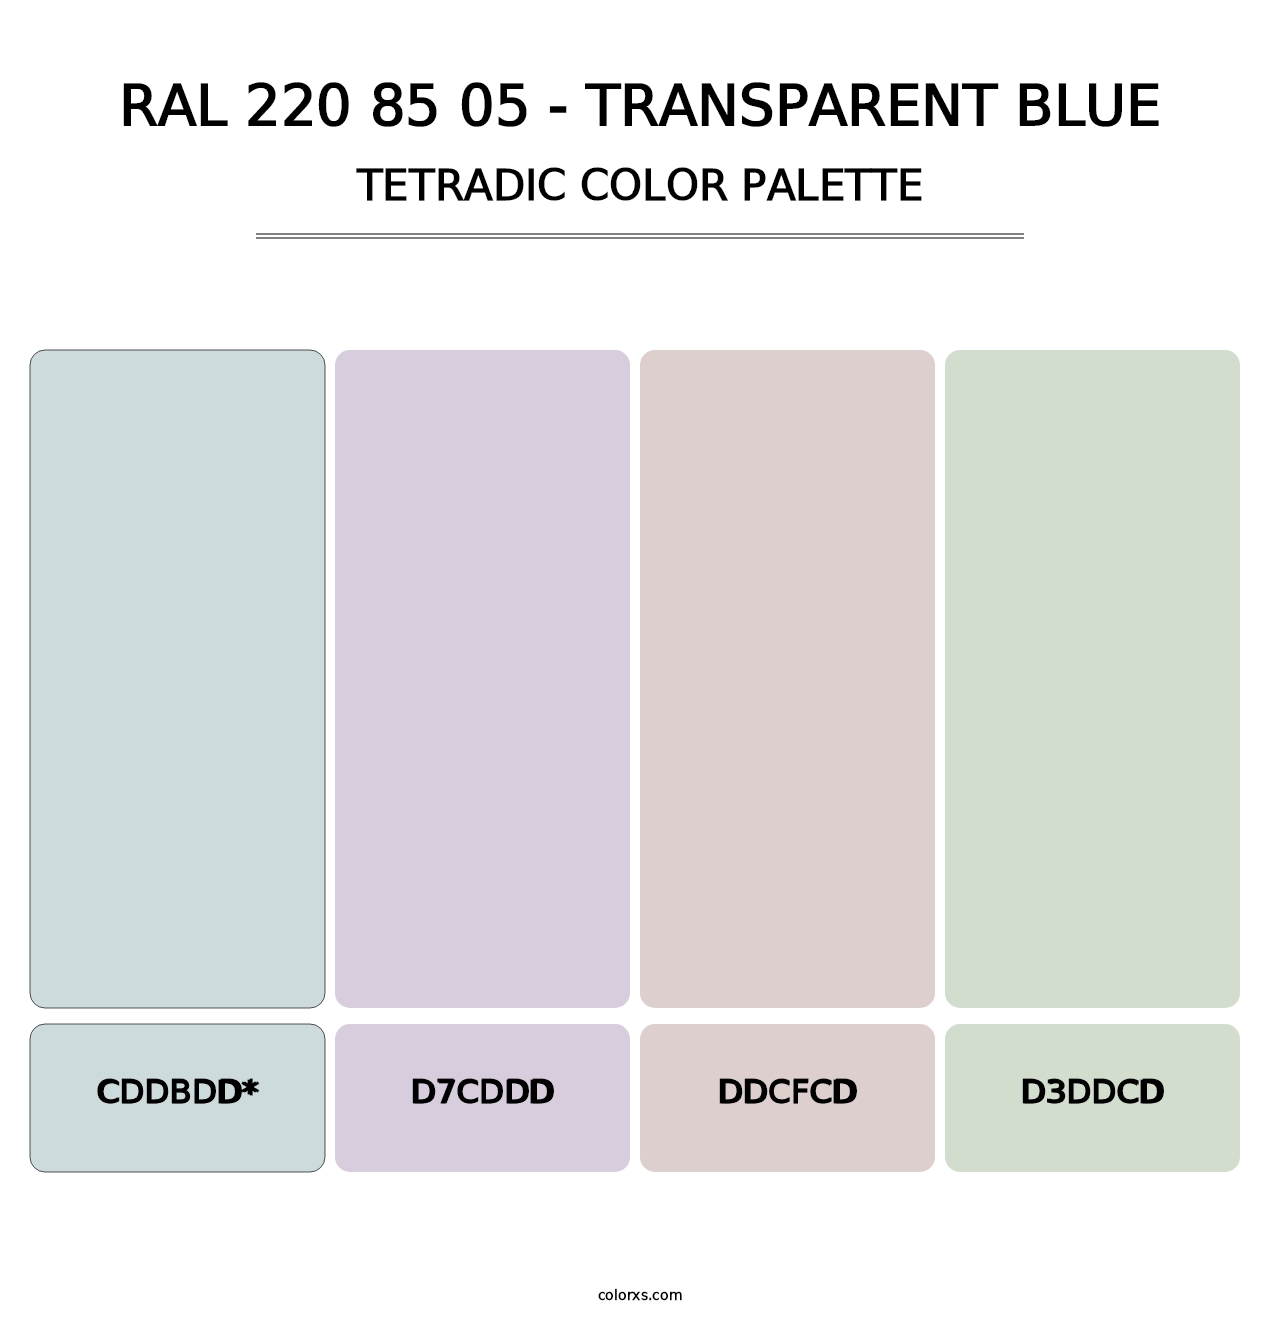 RAL 220 85 05 - Transparent Blue - Tetradic Color Palette